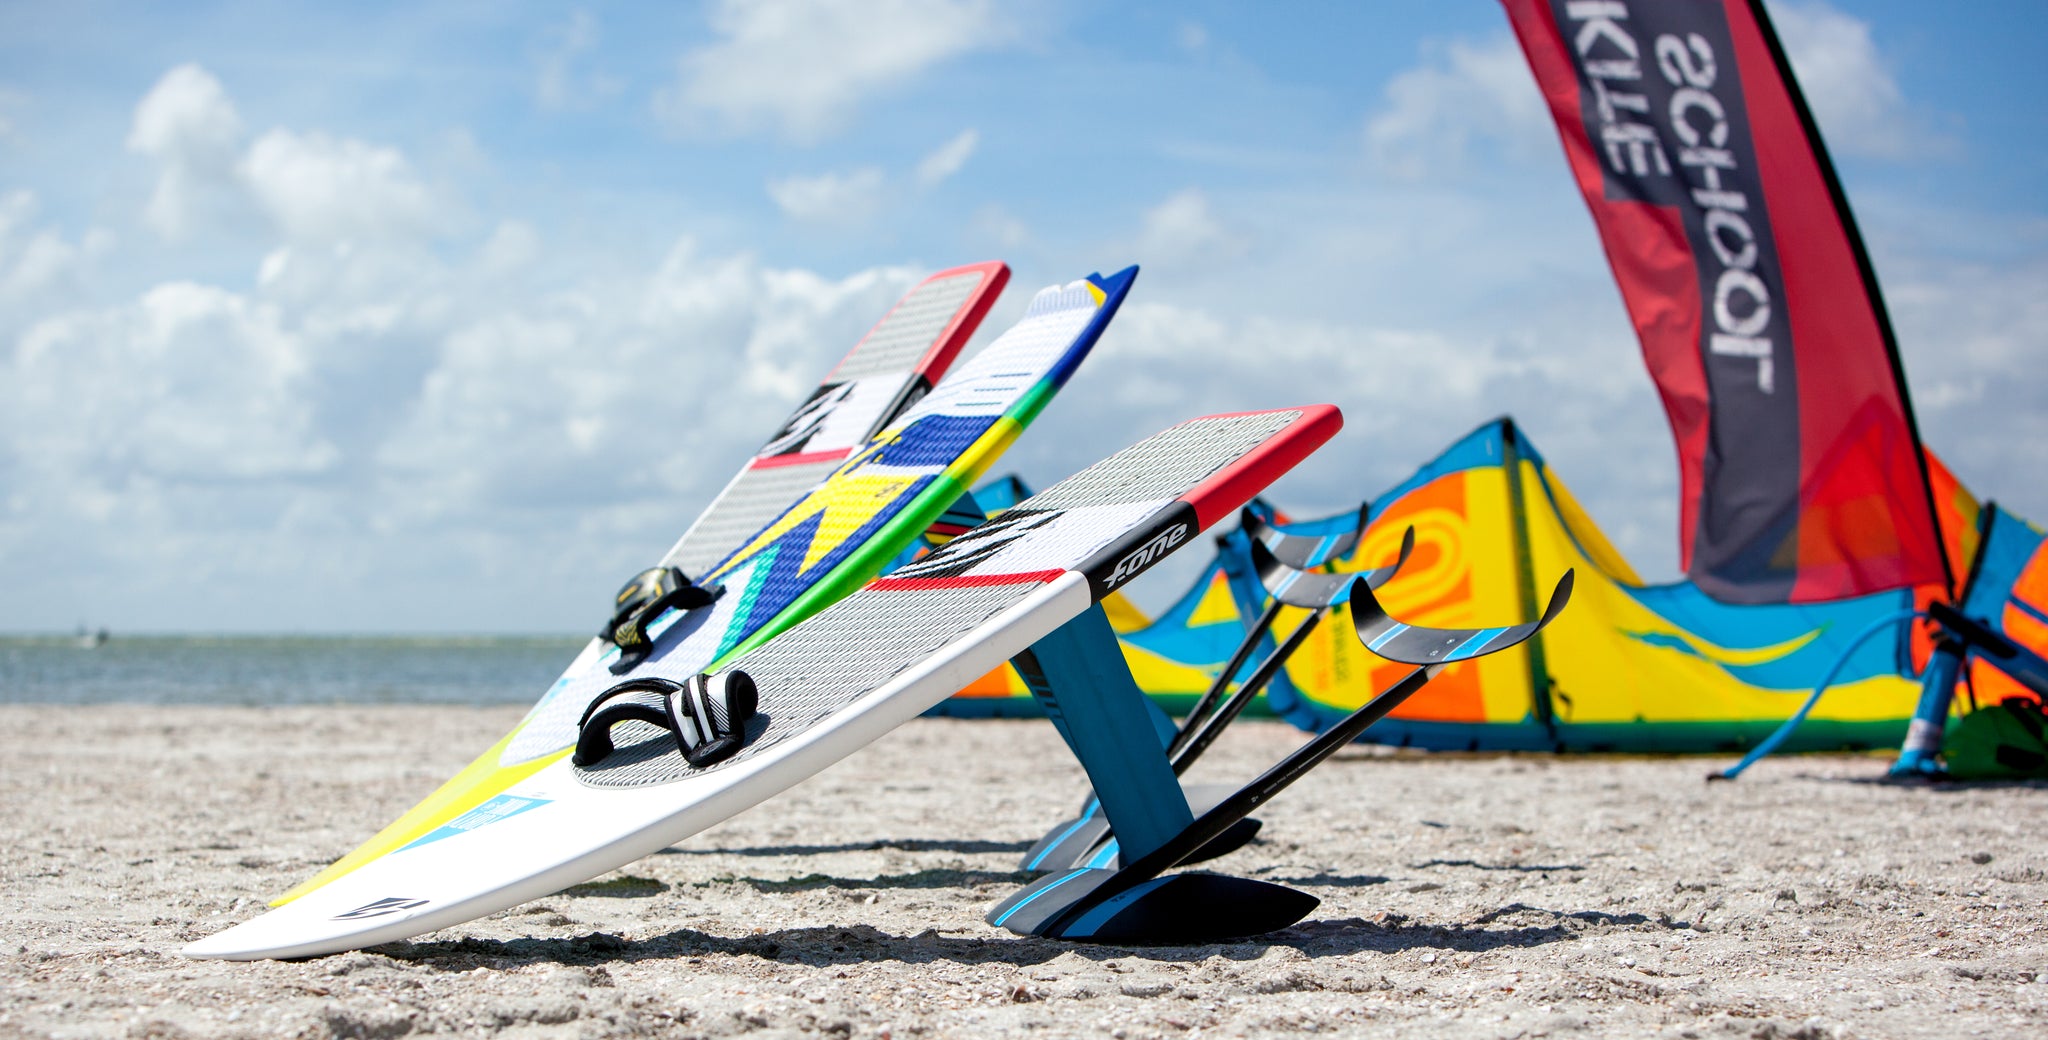 F-ONE Kitematerial Kites und Boards und Foilboard von F-ONE am Kitespot des KBC Holland